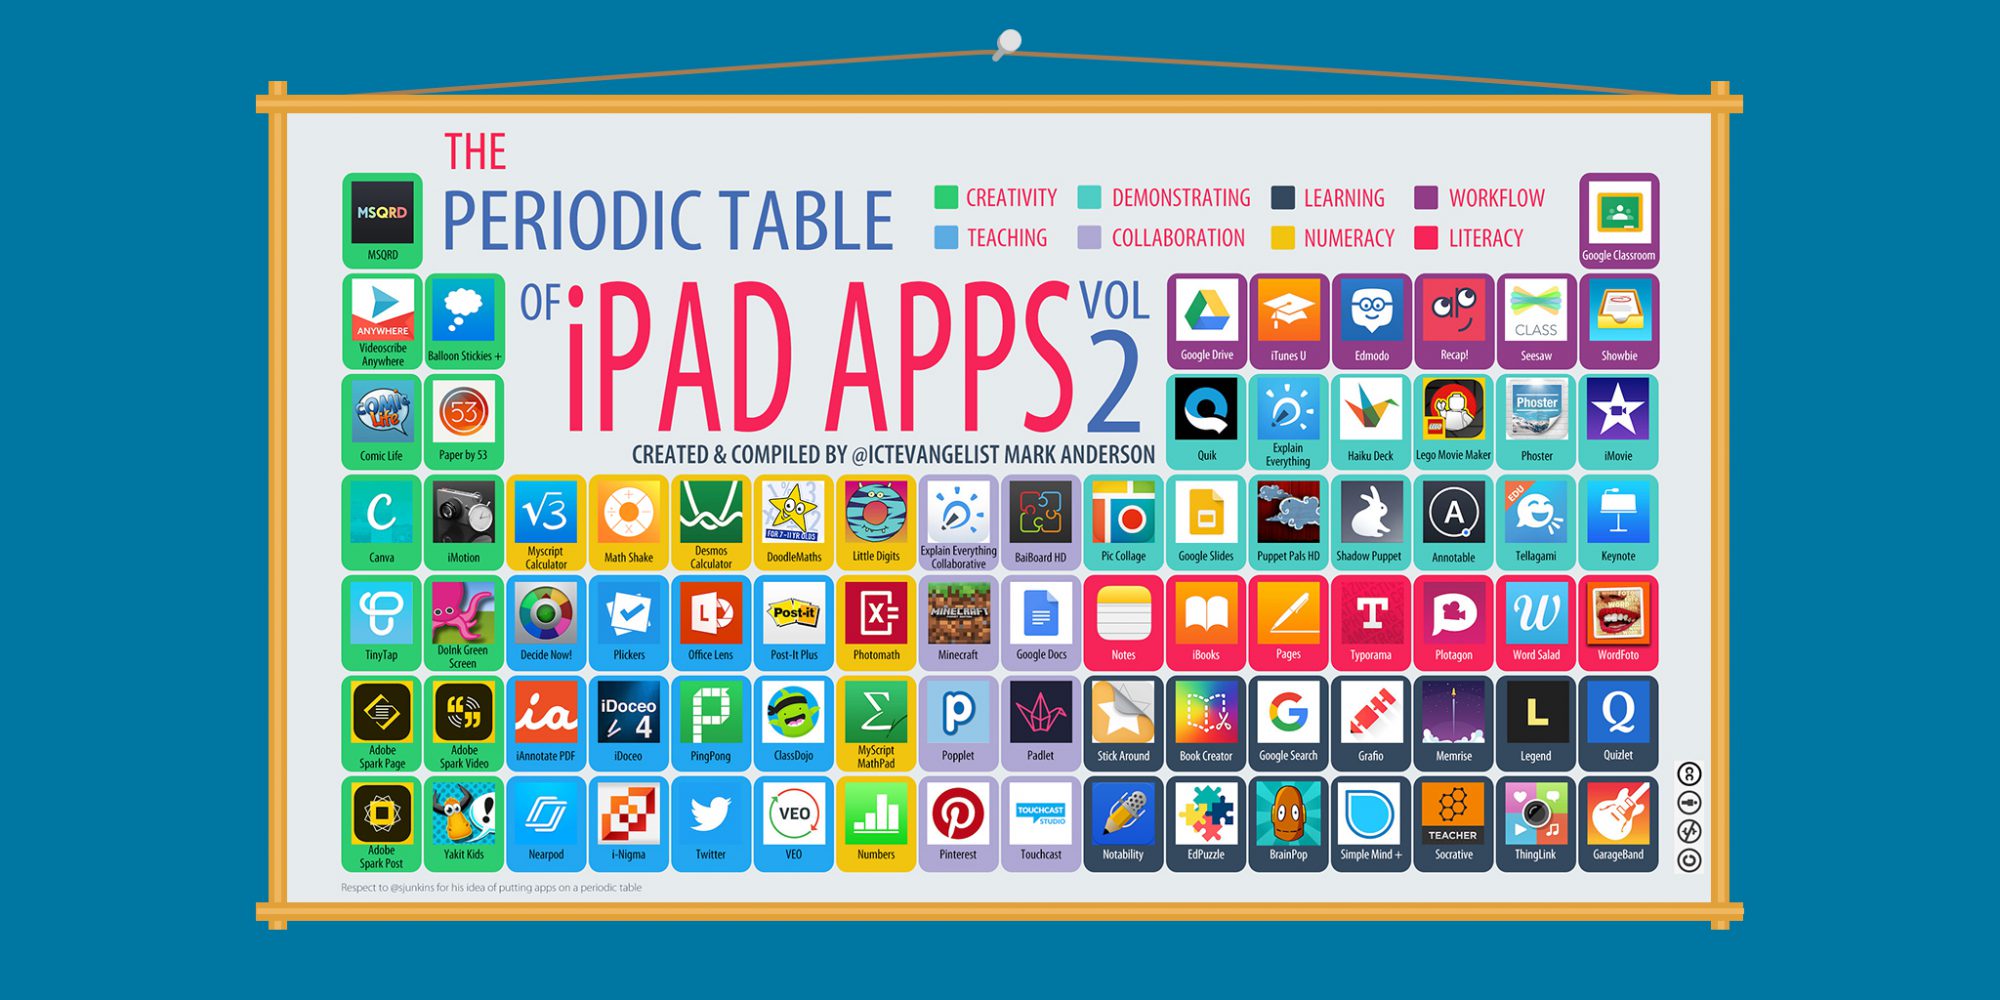 iPad apps for teachers